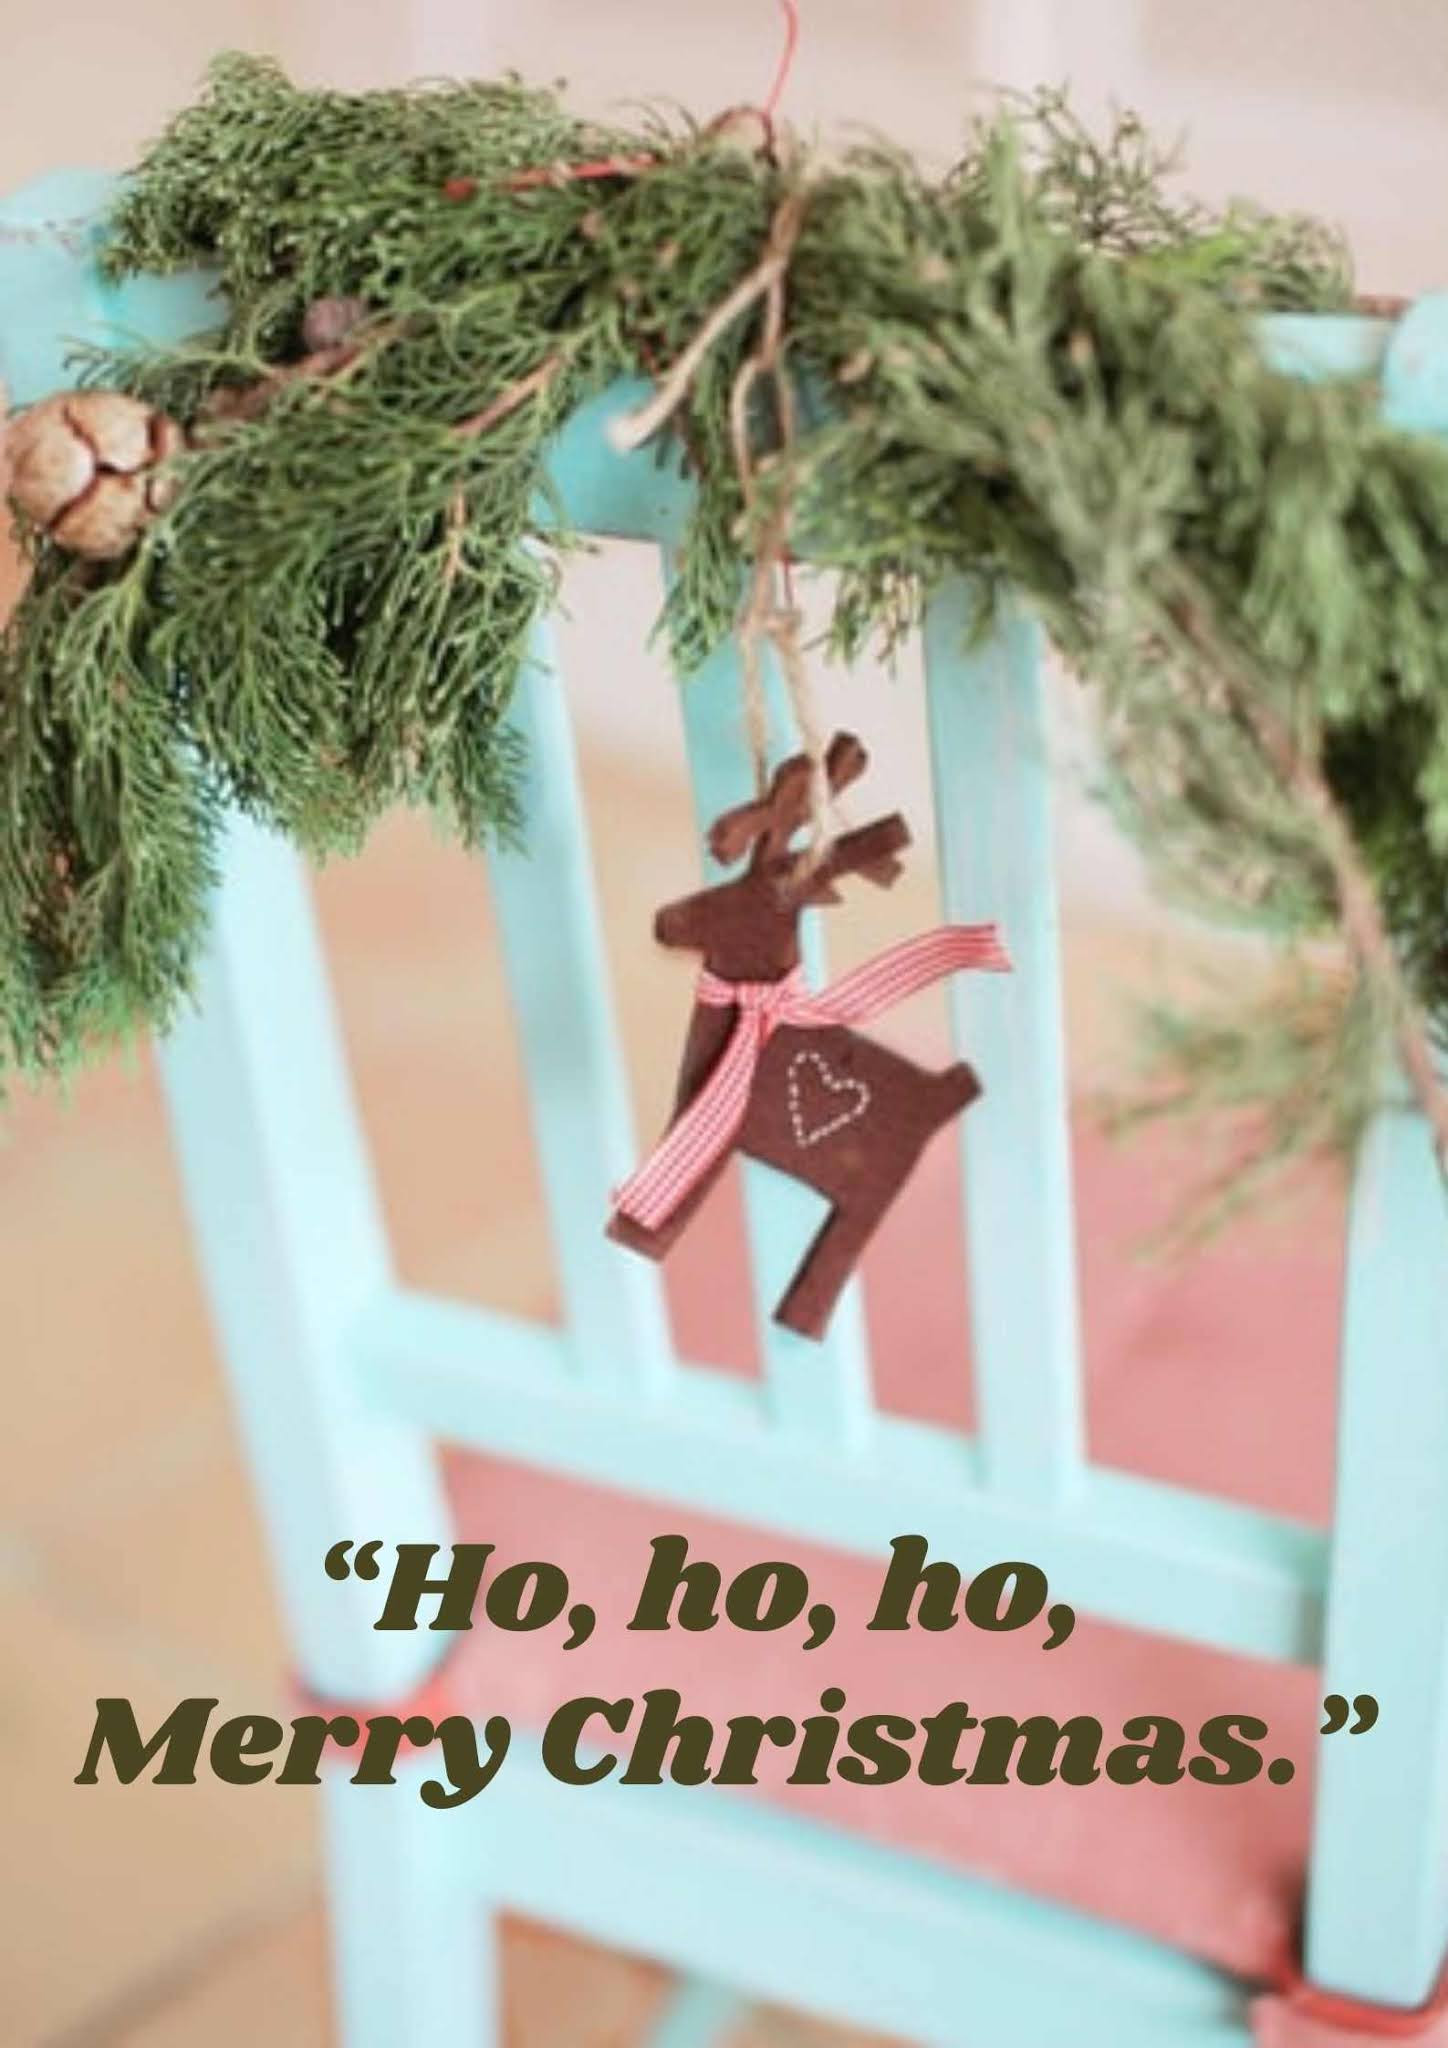 Ho Ho Ho Merry Christmas image 2020